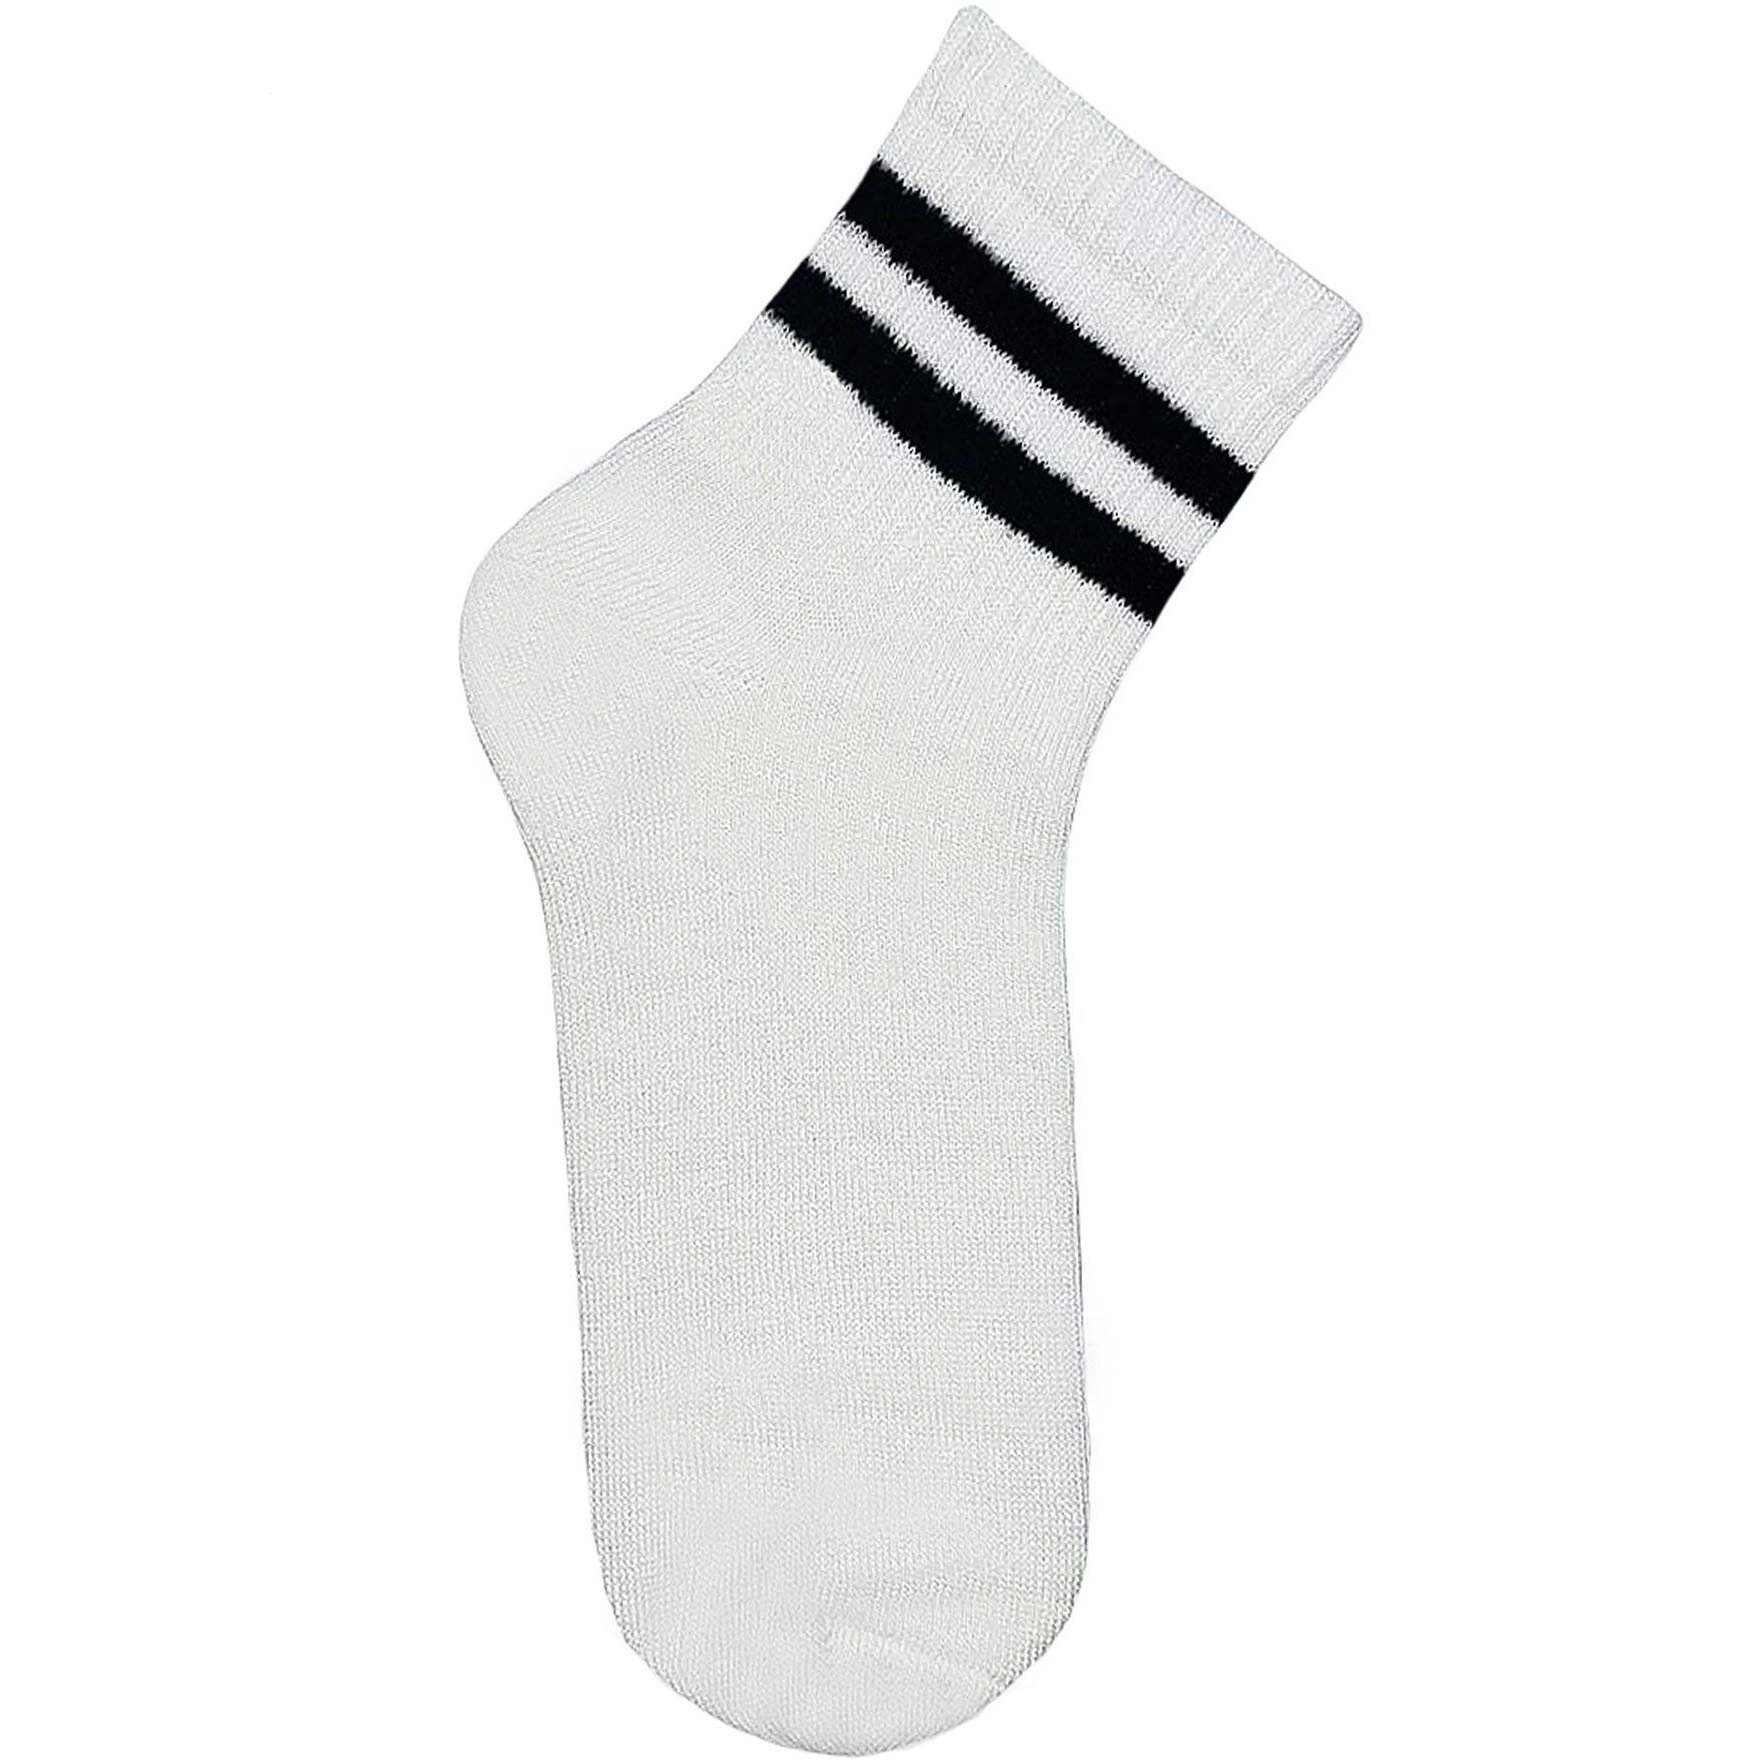 Носки детские Premier Socks 22-24 1 пара белые с черными полосками (4820163320083) фото 1